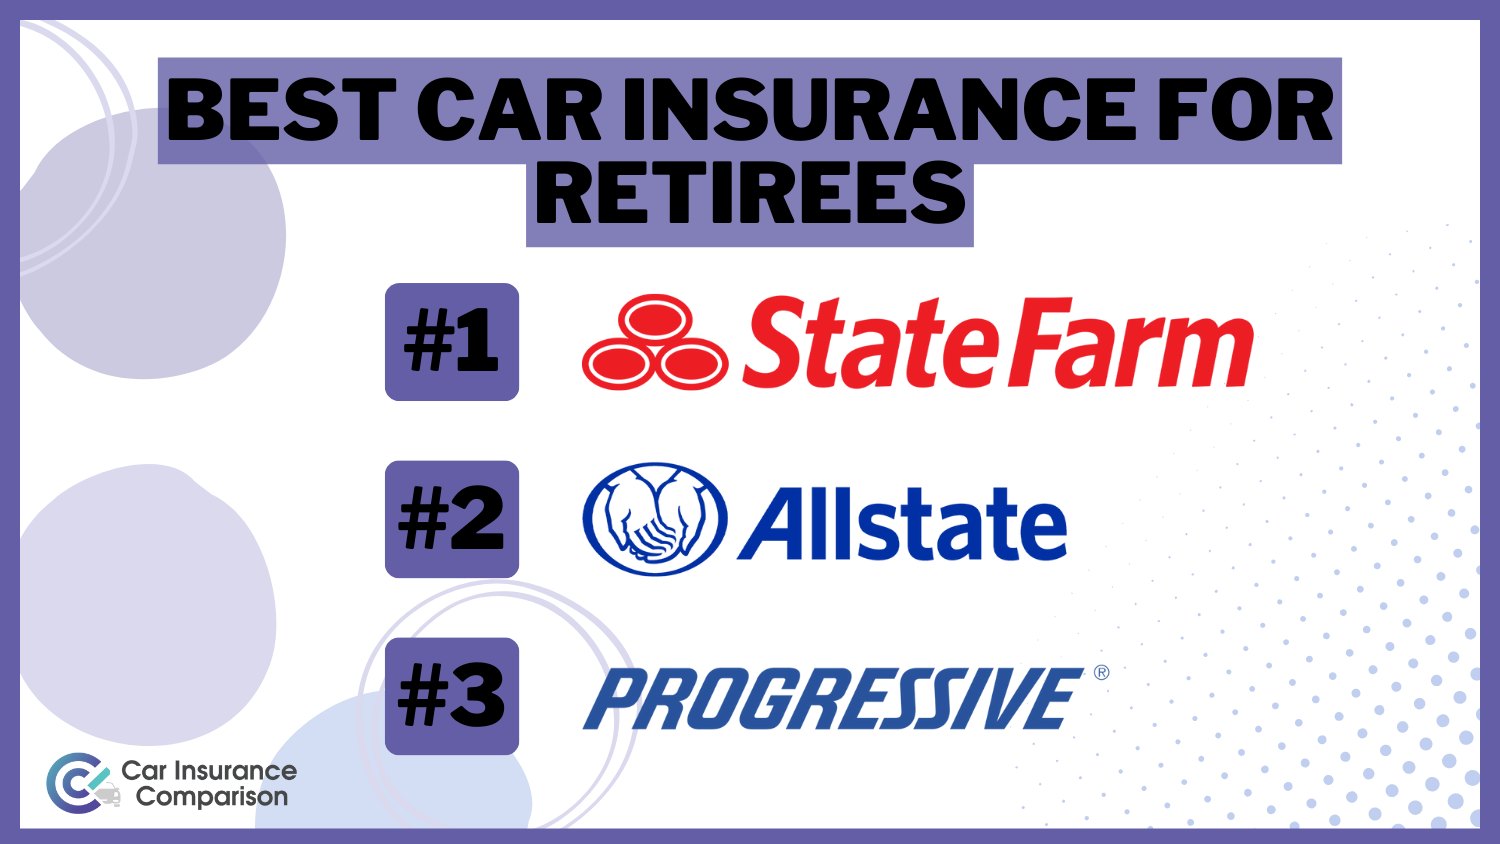 State Farm, Allstate, Progressive: Best Car Insurance for Retirees